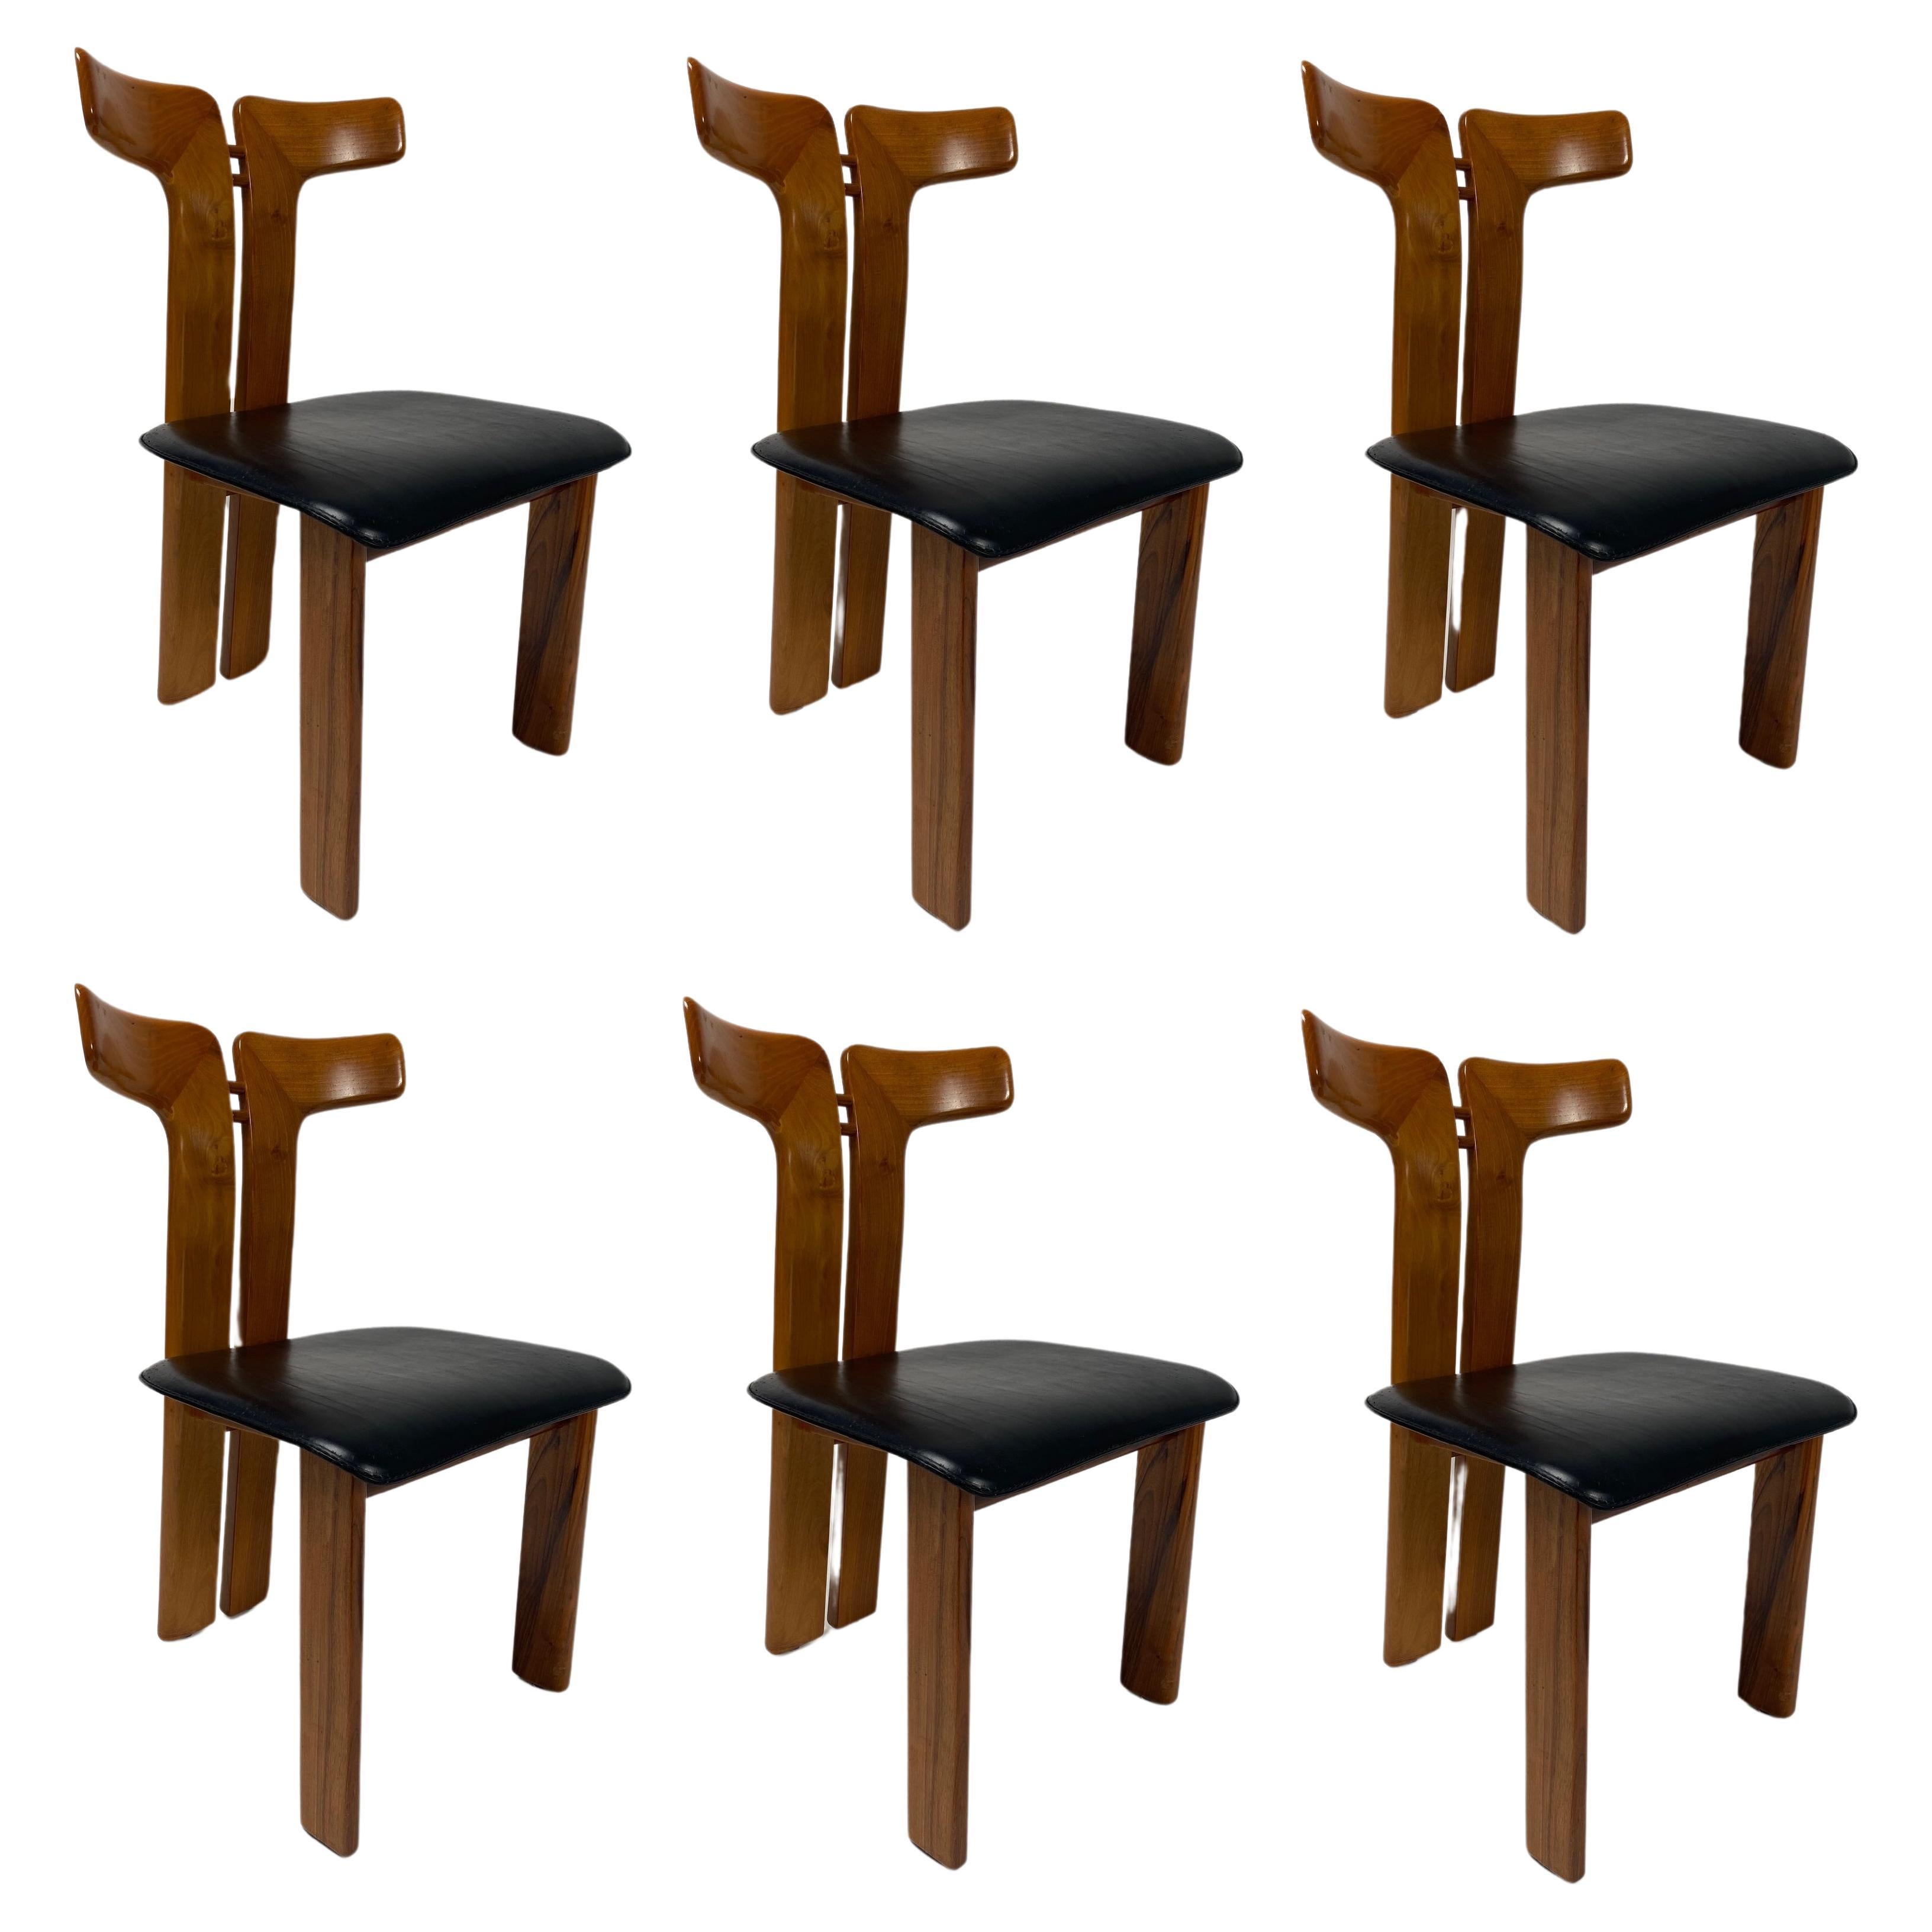 Pierre Cardin, 6 chaises de salle à manger en noyer et cuir, 1970